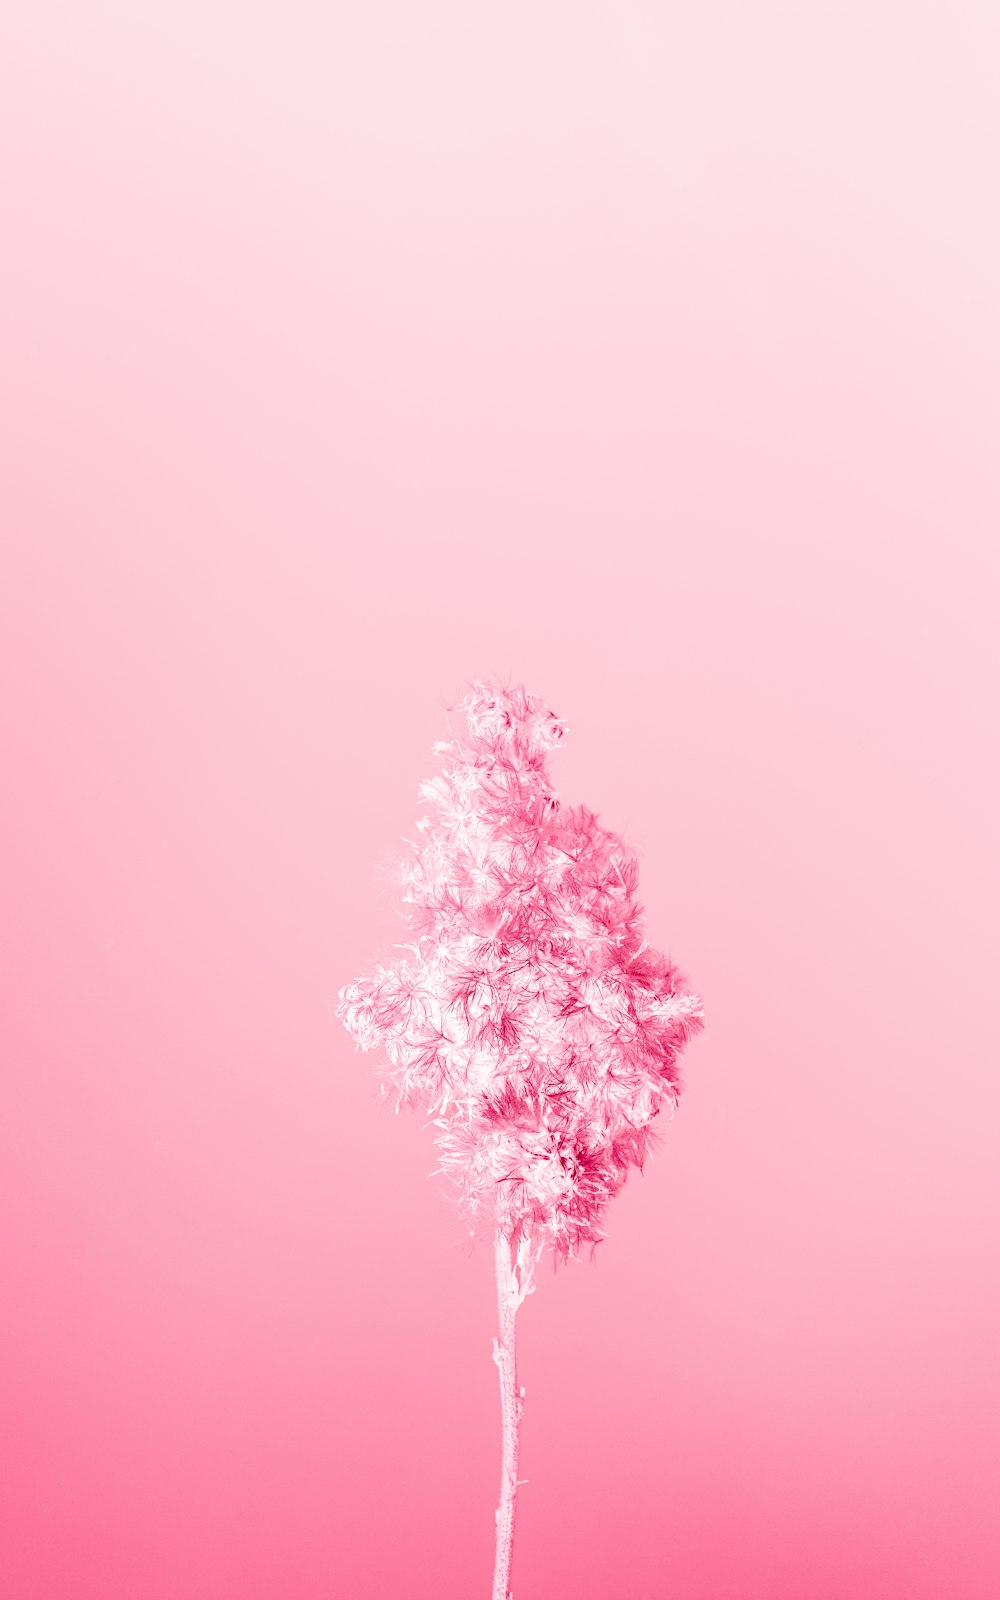 Un solo árbol blanco sobre un fondo rosado